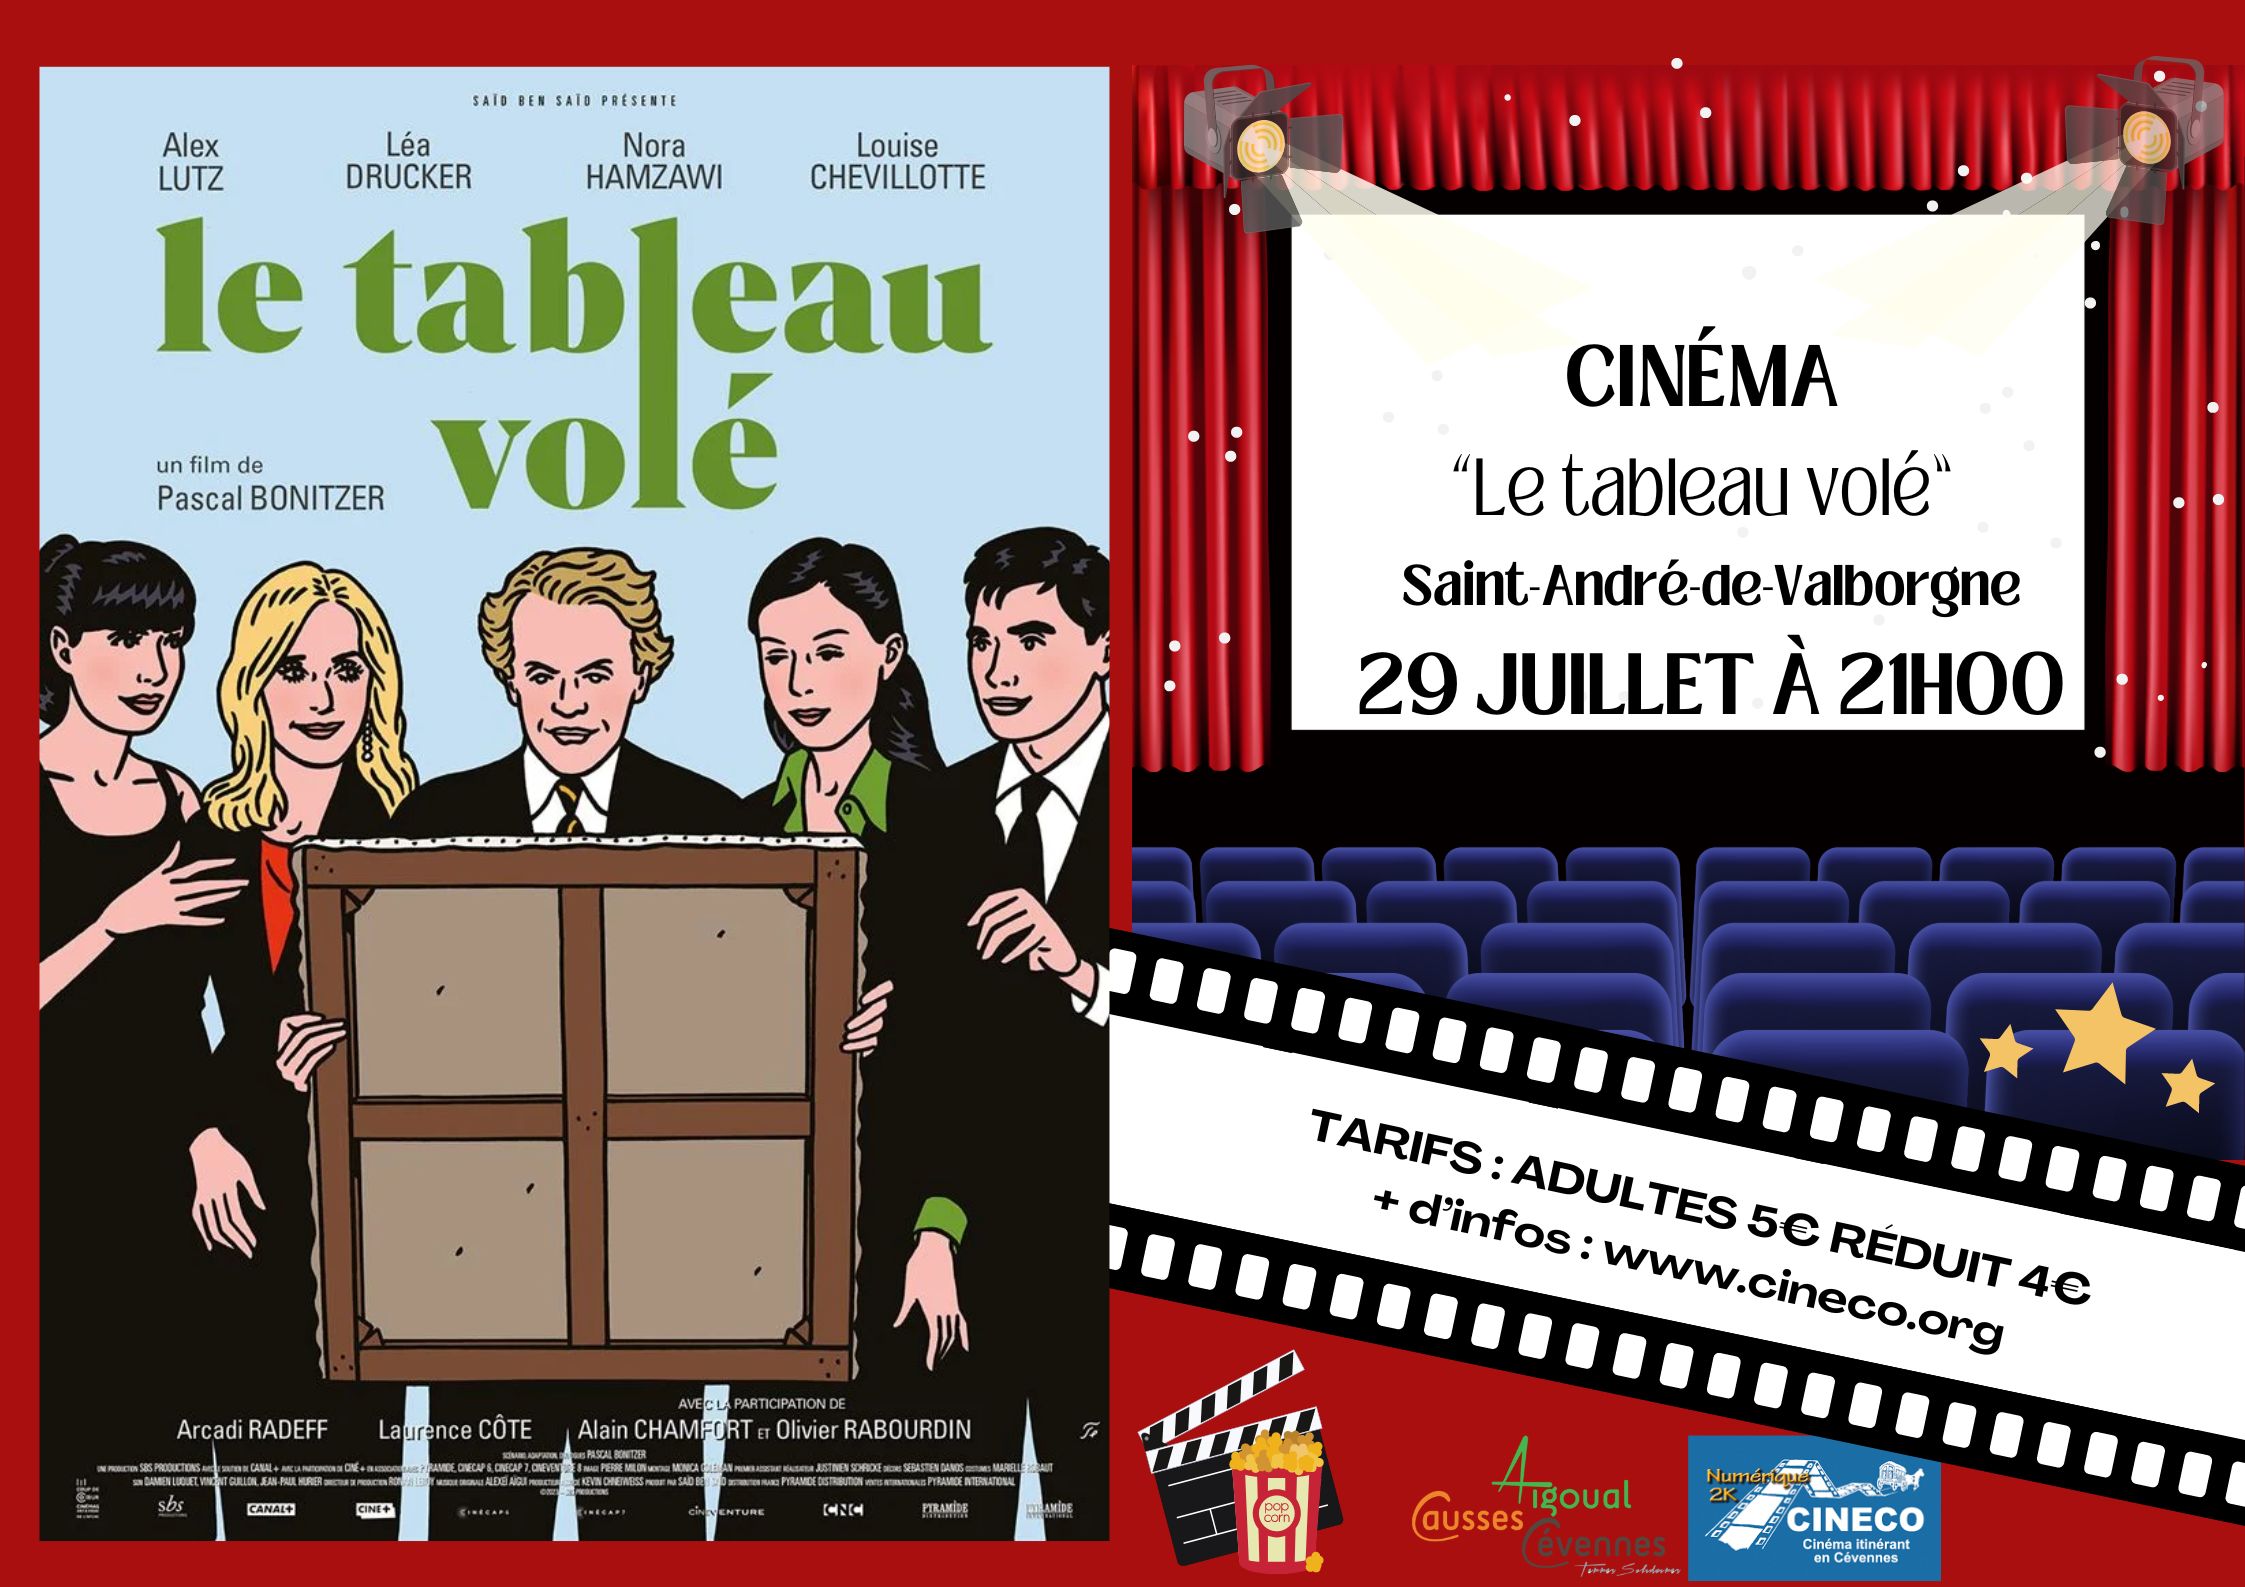 ÉVÉNEMENT Cinéma 29/07 – Saint-André-de-Valborgne